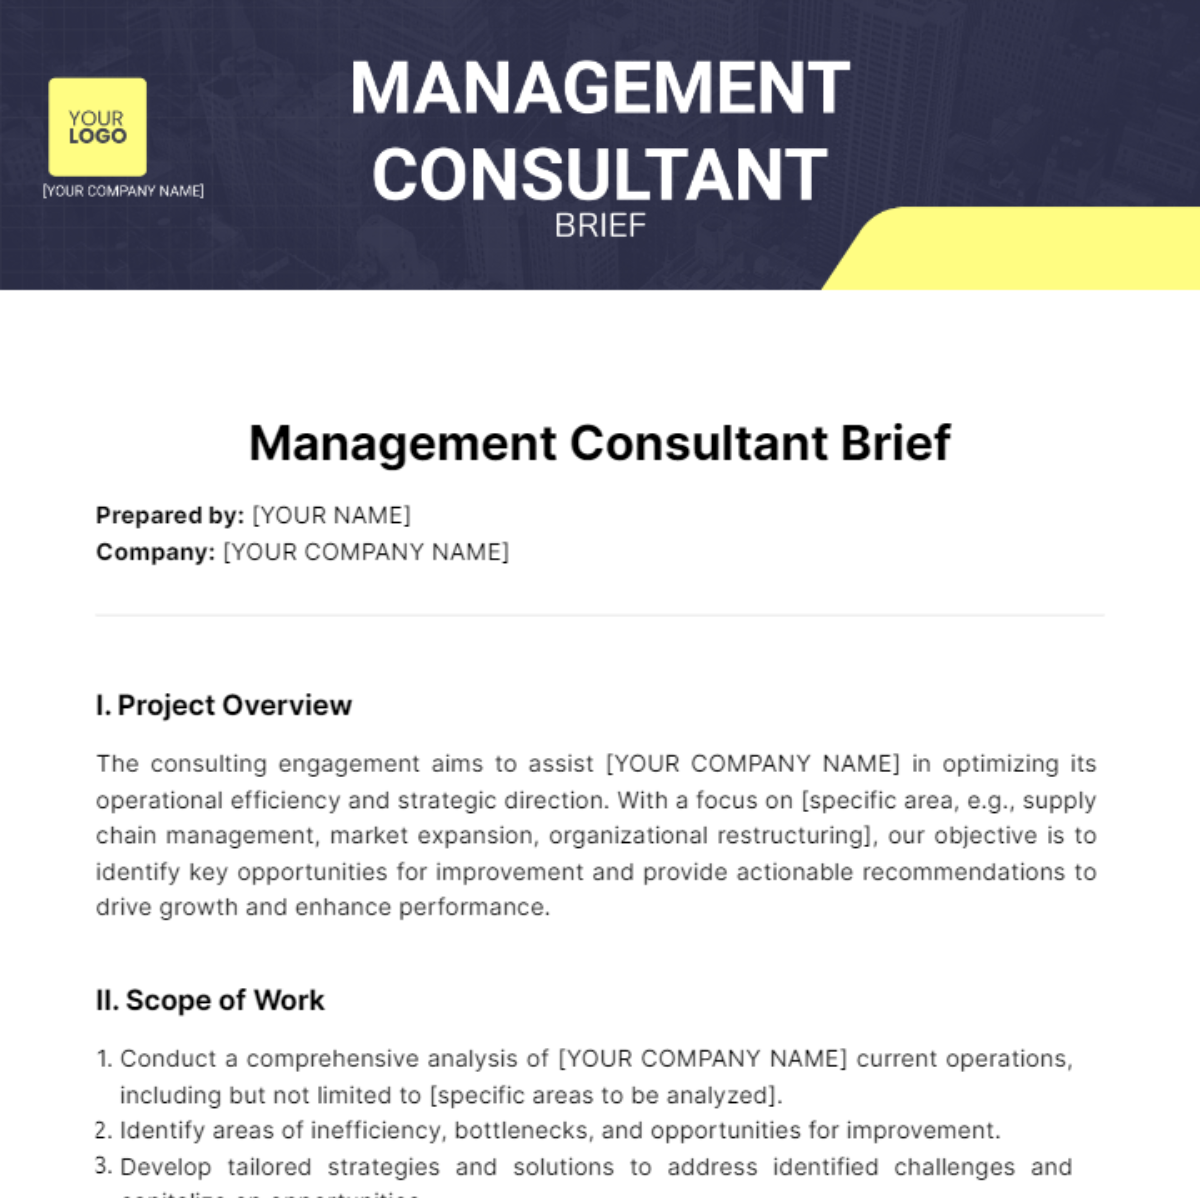 Management Consultant Brief Template